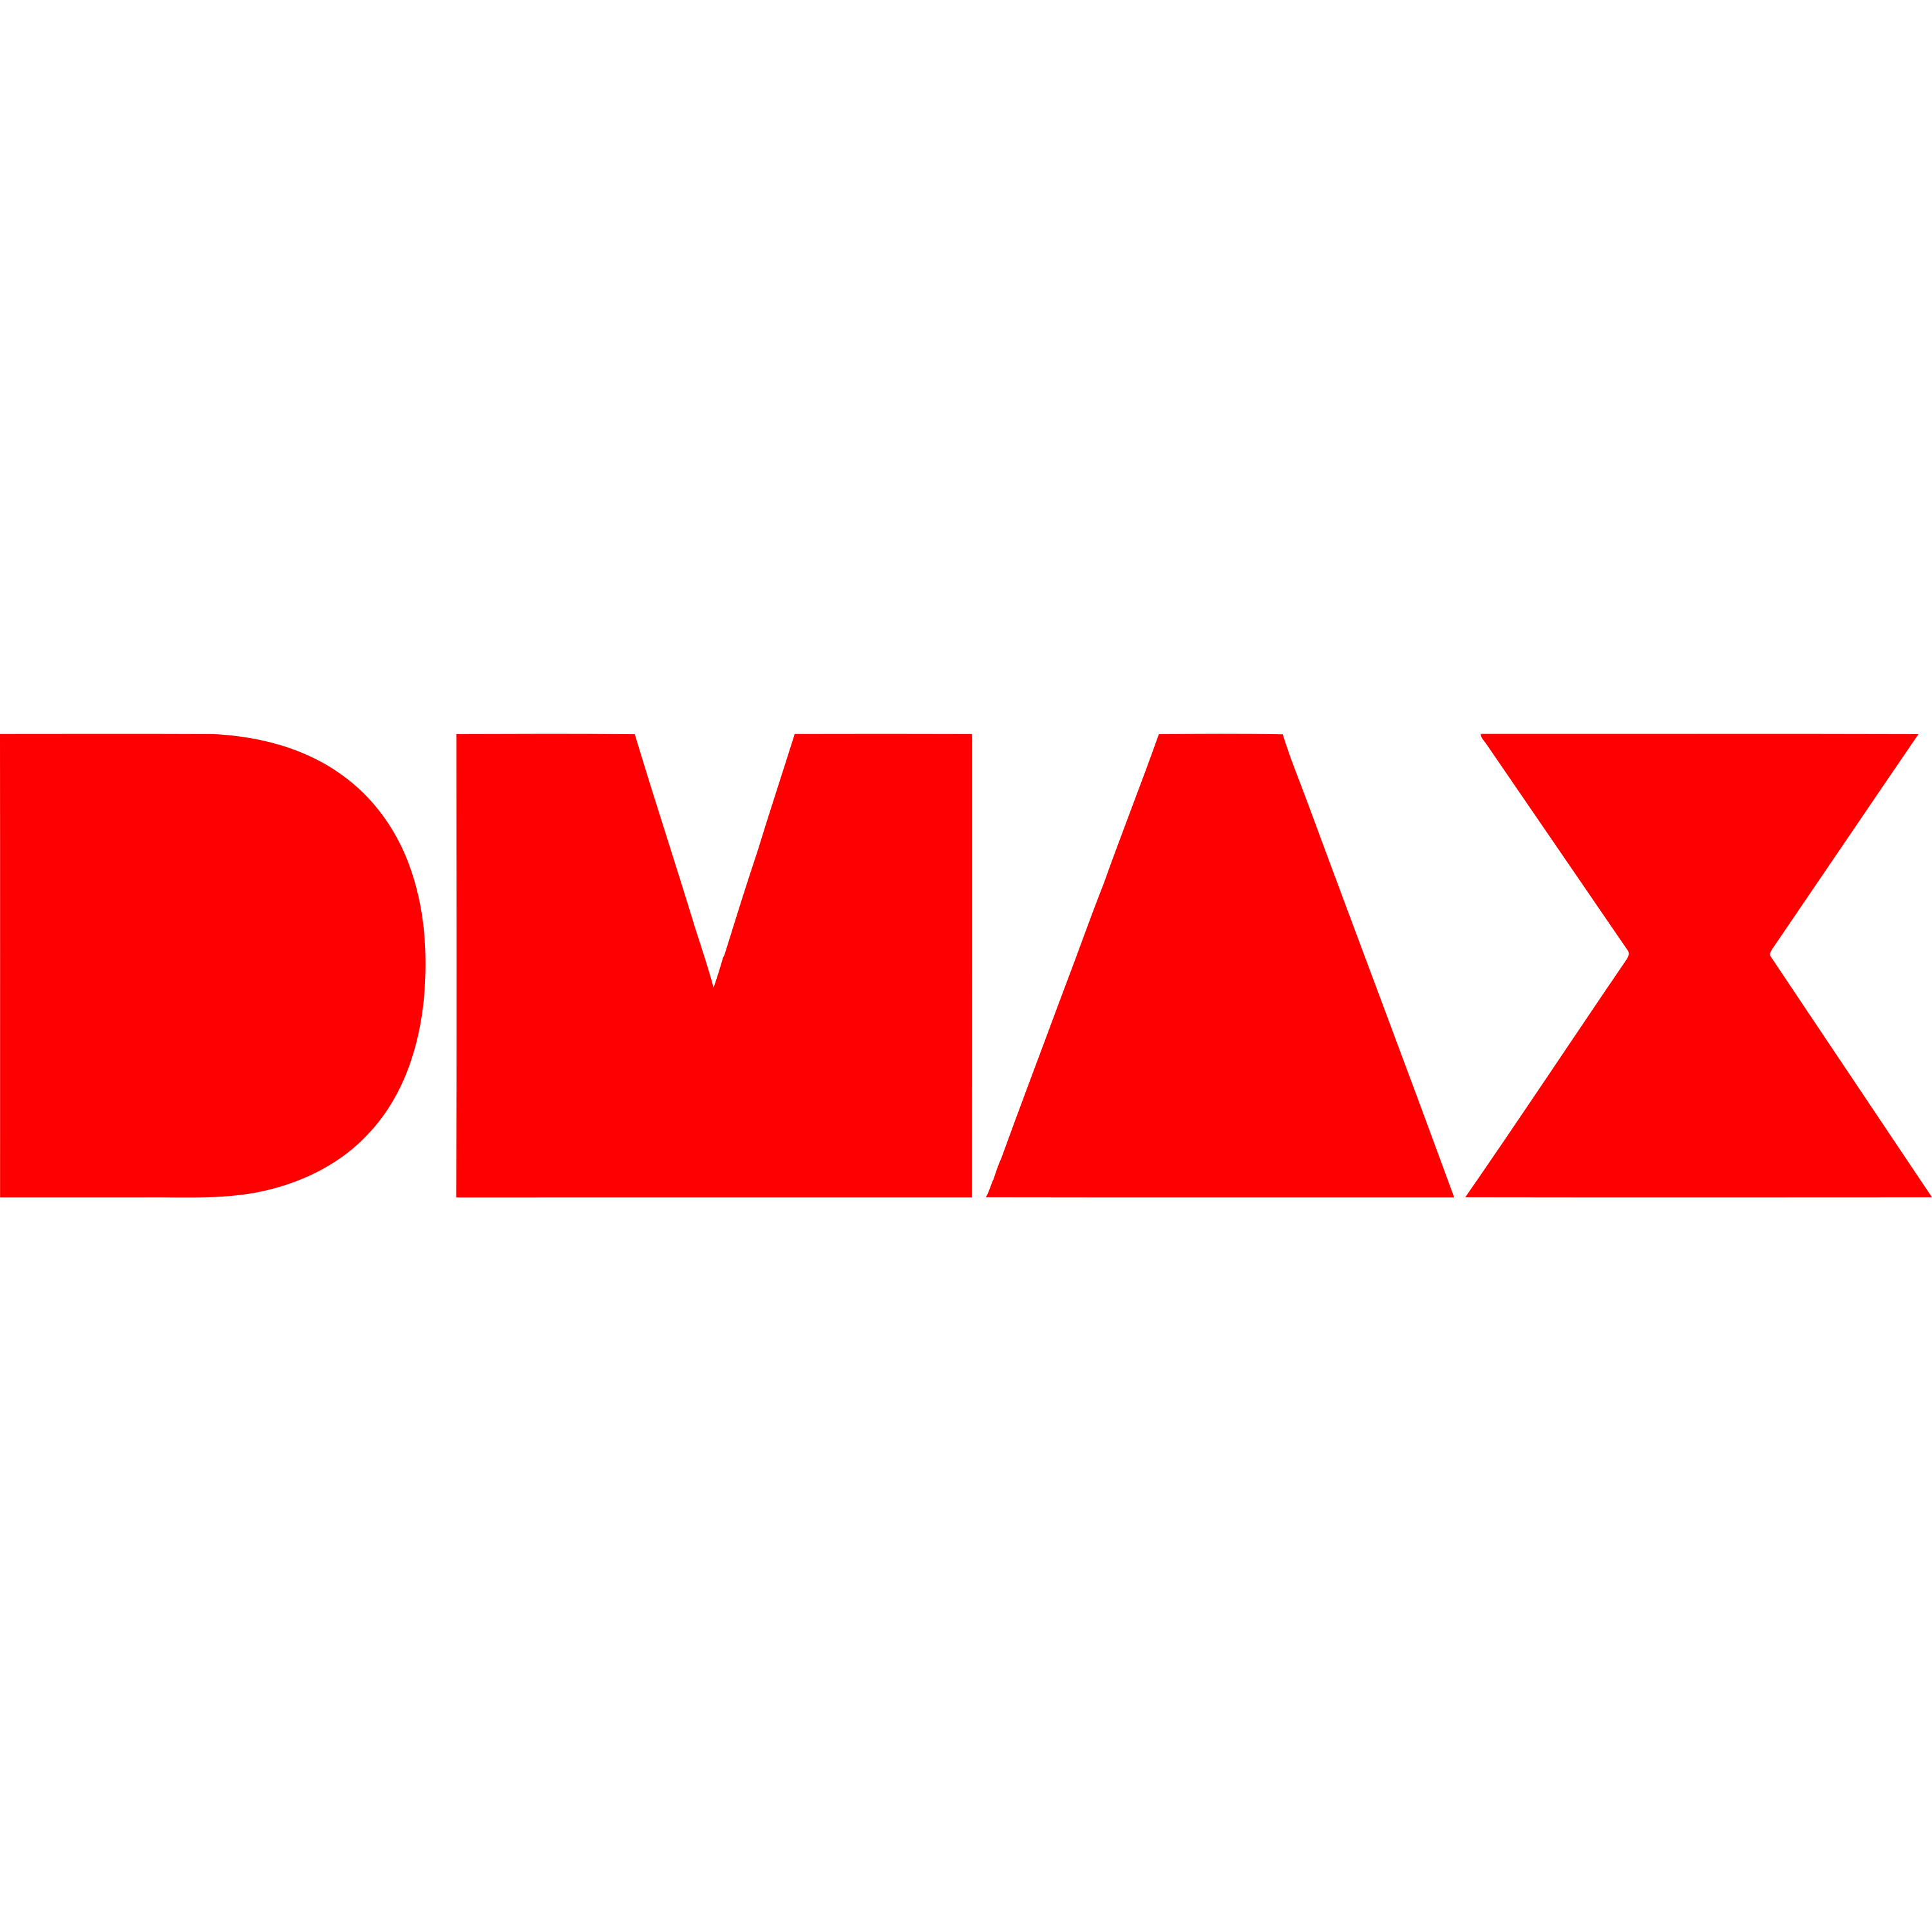 DMAX Spain Logo Transparent Picture